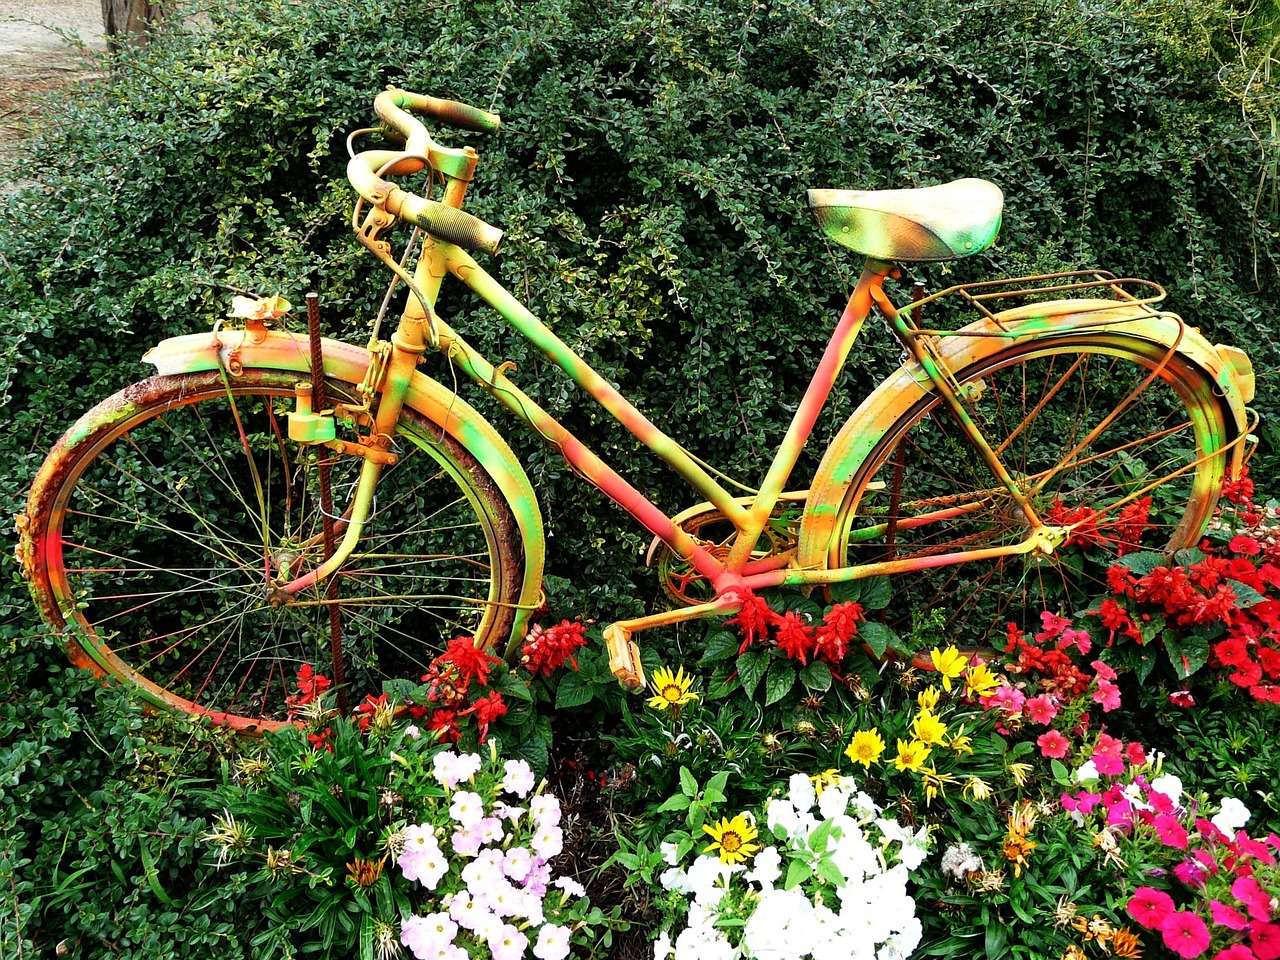 painted bike in flowers